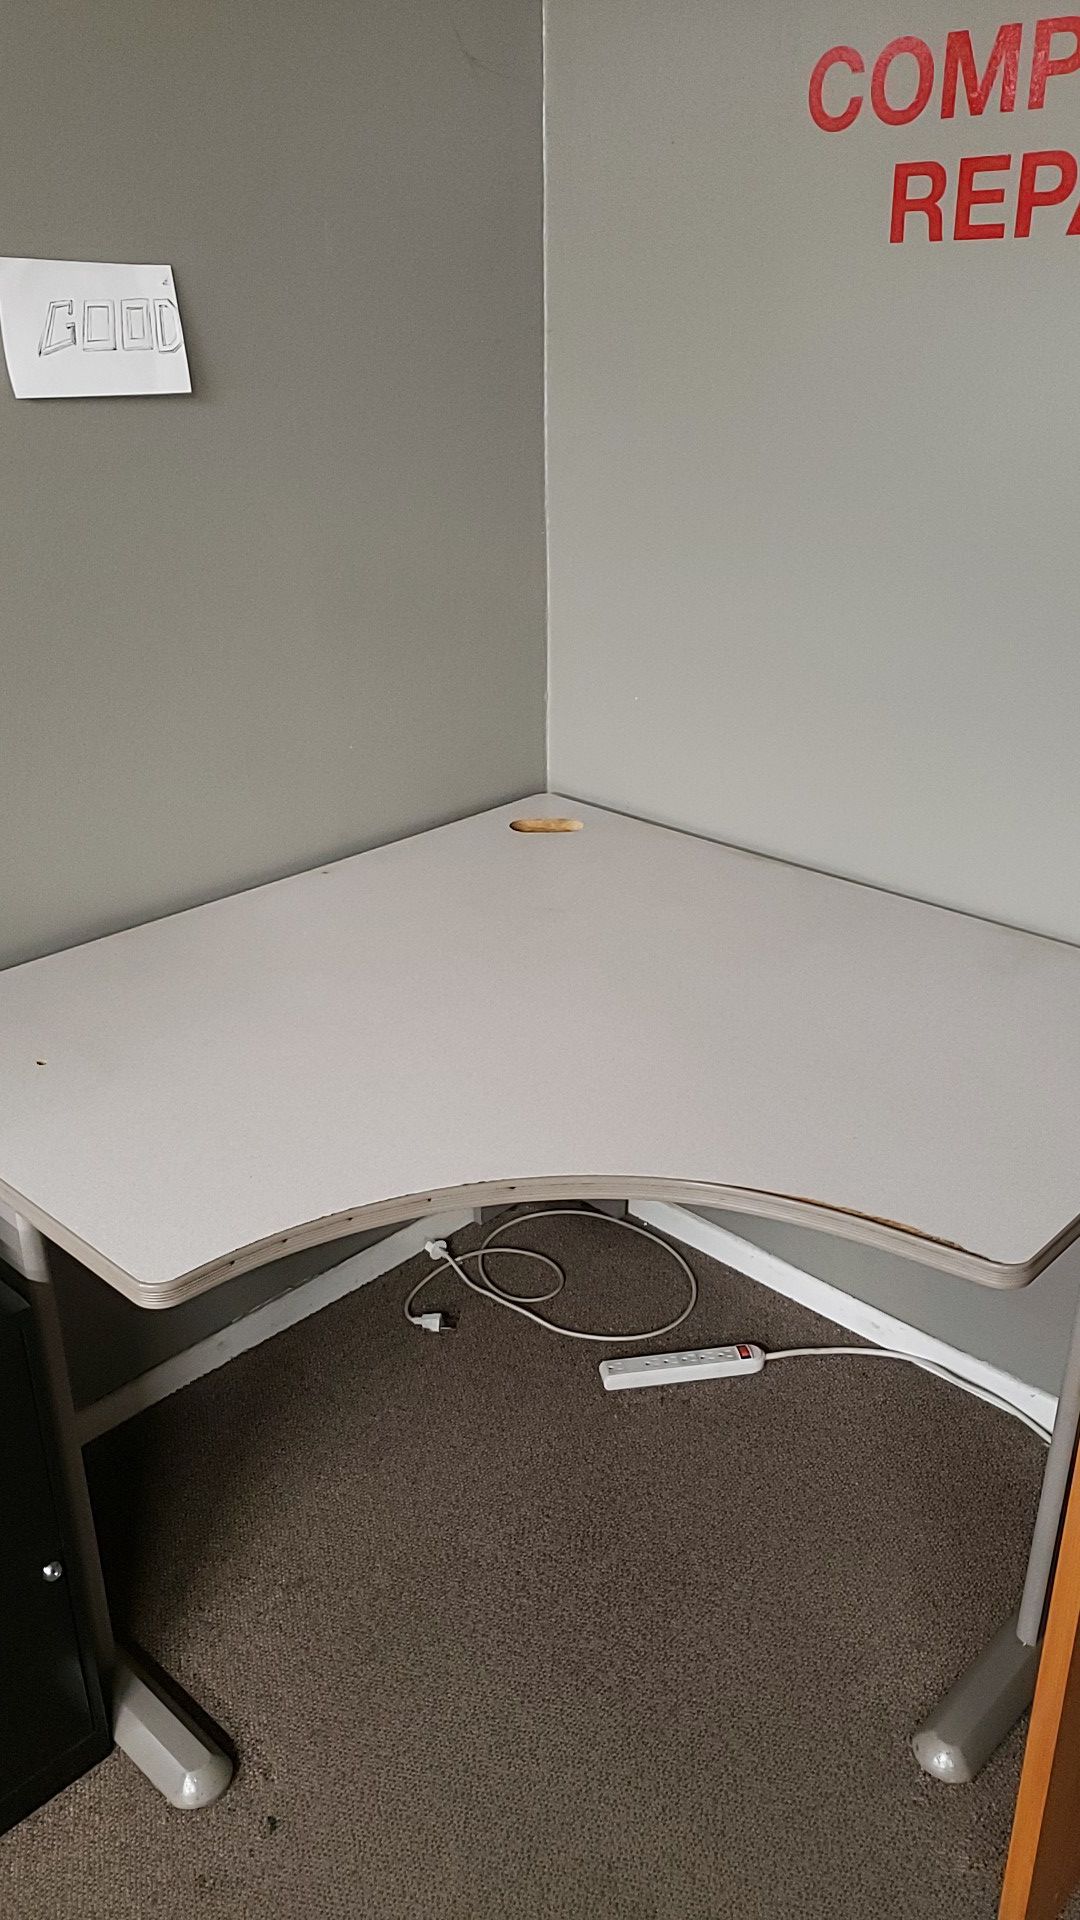 Large corner desk